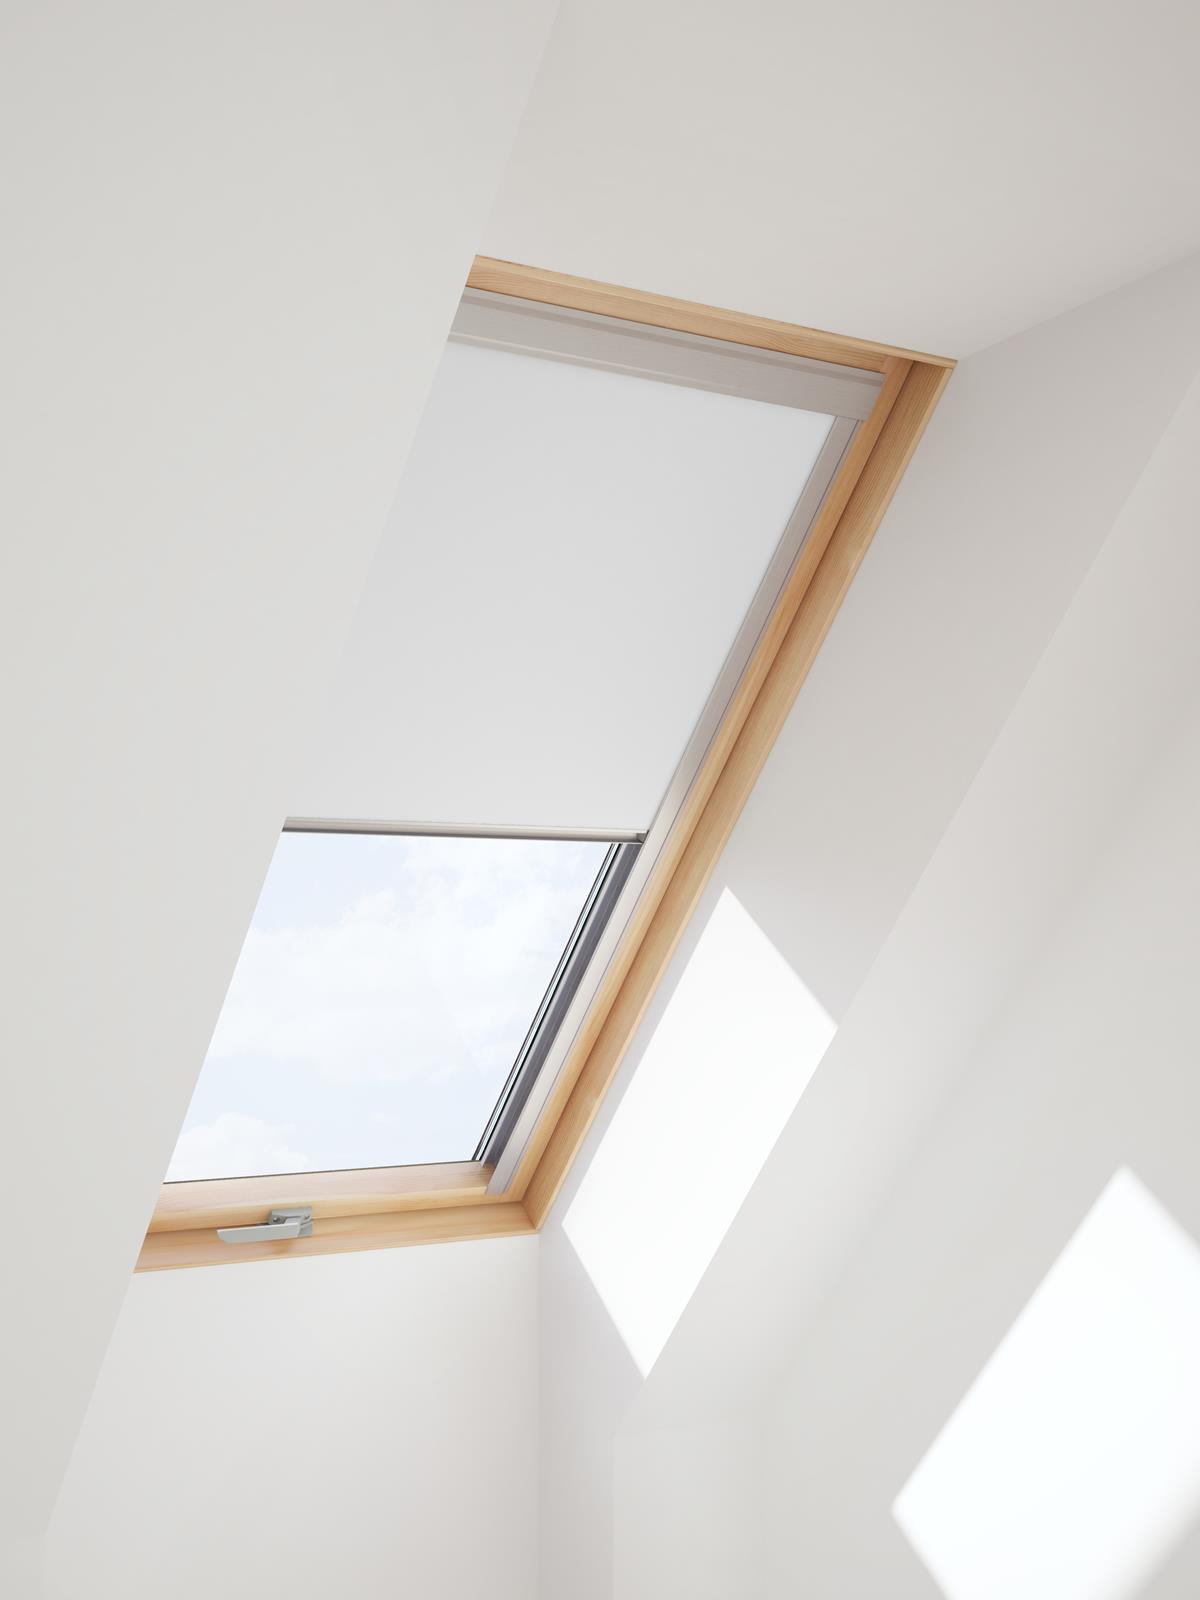 Verdunkelungsrollo für VELUX Dachfenster in weißer Farbe